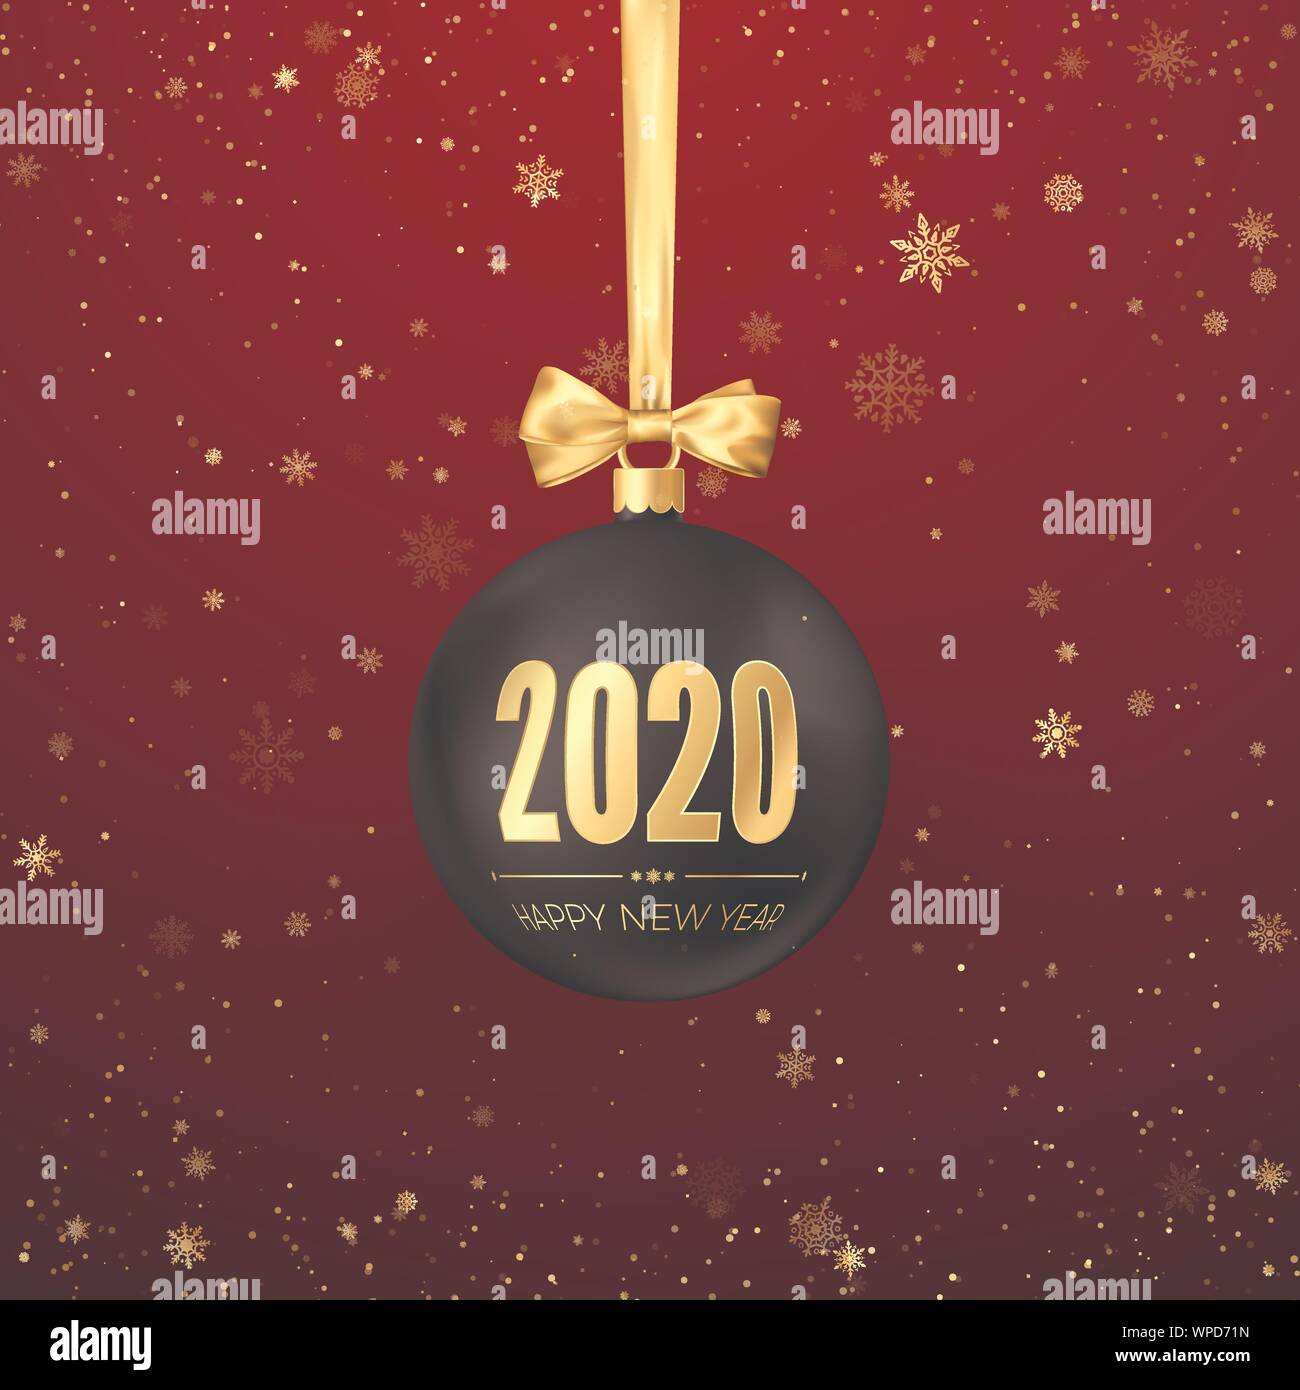 Felice anno nuovo 2020. Biglietto di auguri con nero di nevicata palla di Natale con nastro d'oro e i numeri d'oro 2020 su di essi. Nuovo anno e Natale decorat Illustrazione Vettoriale